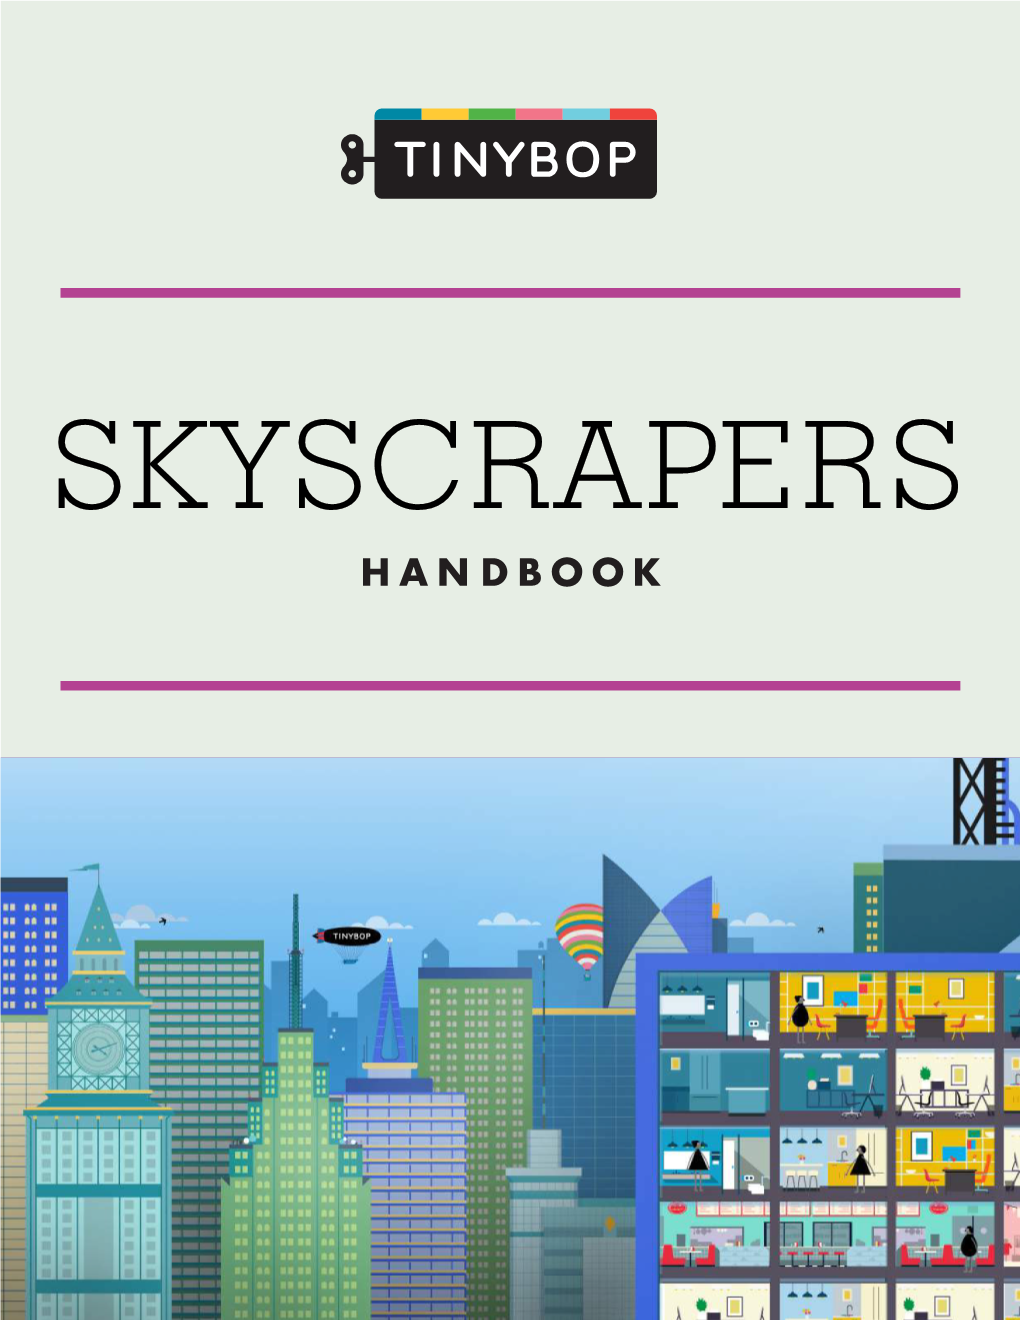 The Skyscrapers Handbook